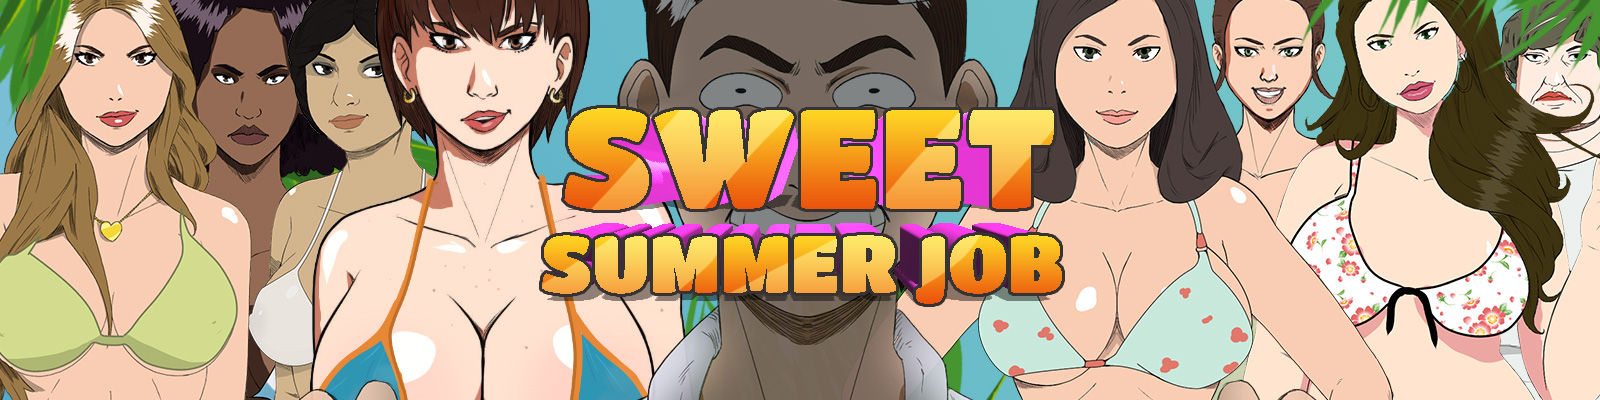 Sweet Summer Job poster